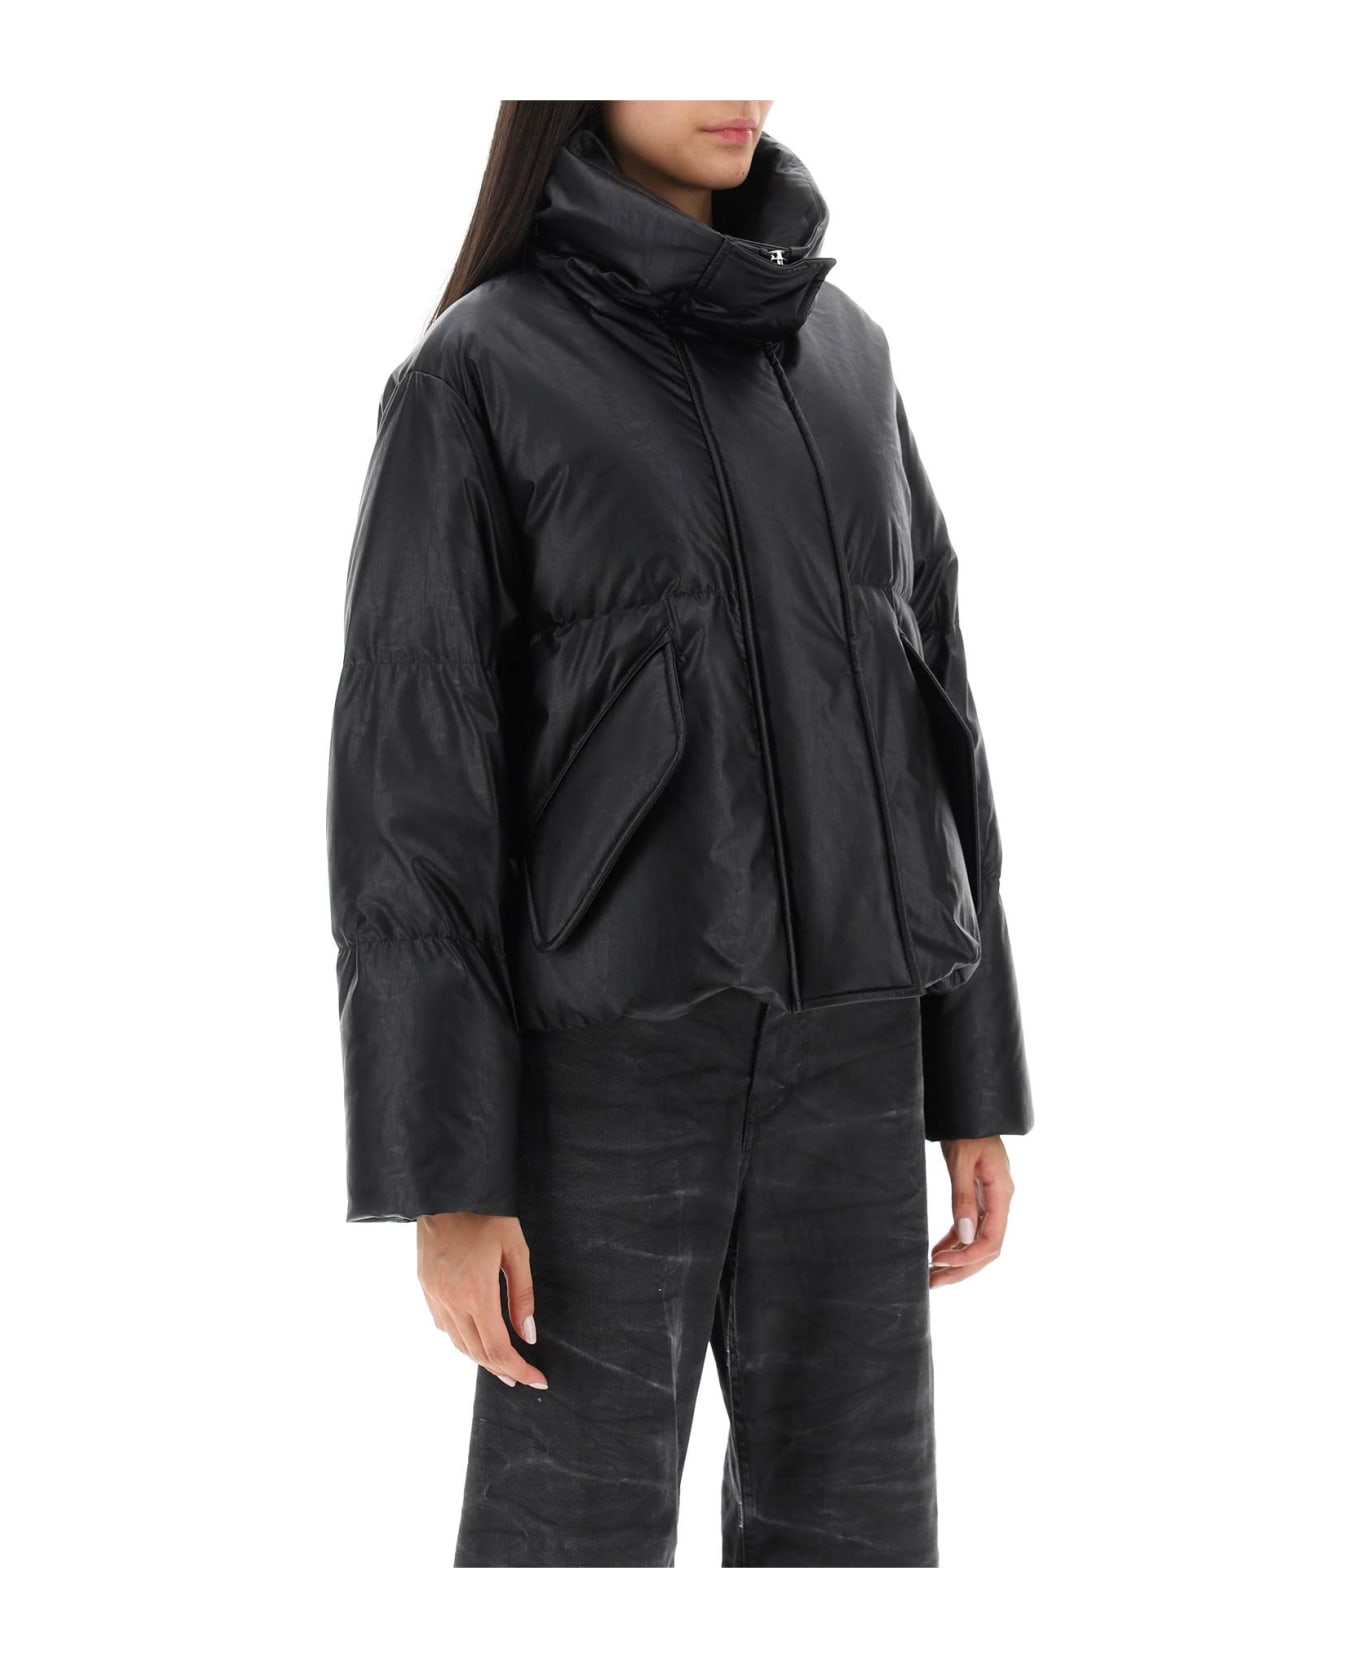 MM6 Maison Margiela Black Leather-like Jacket - 900